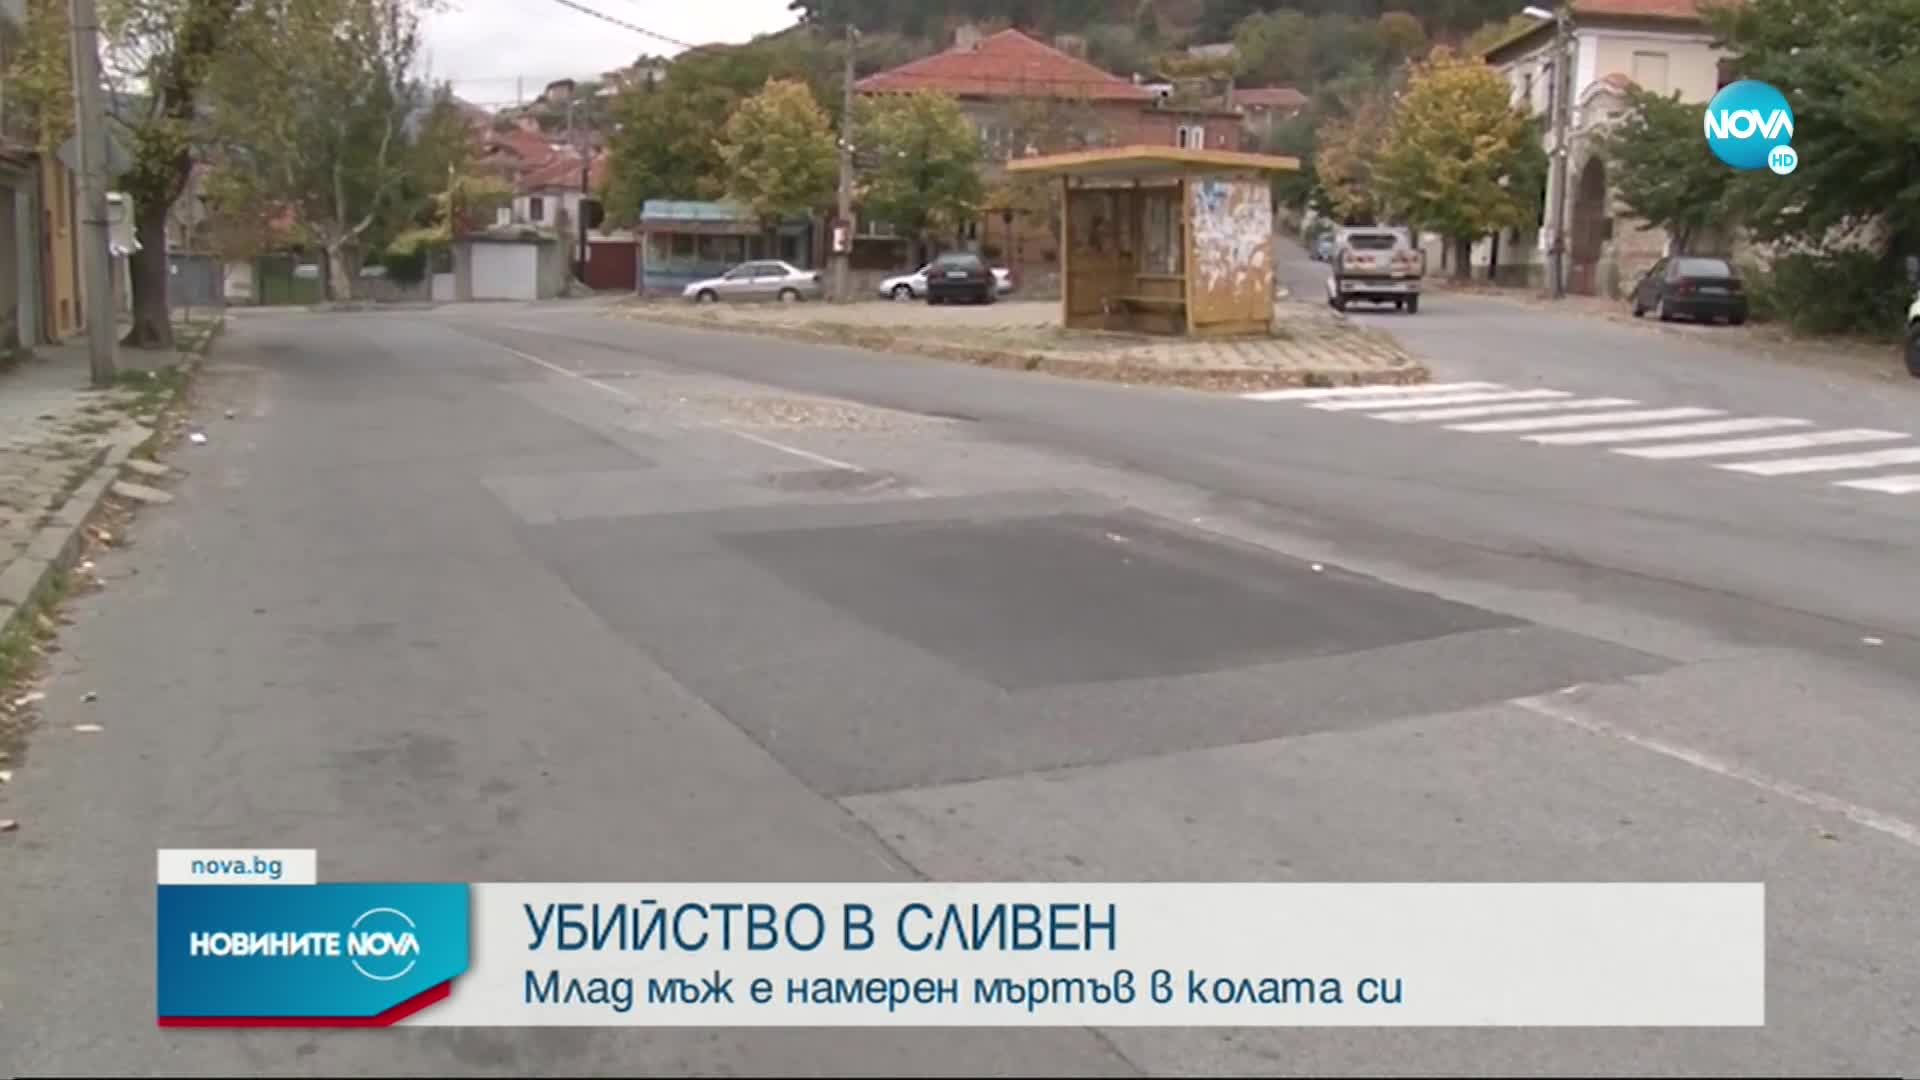 Млад мъж е бил убит в Сливен